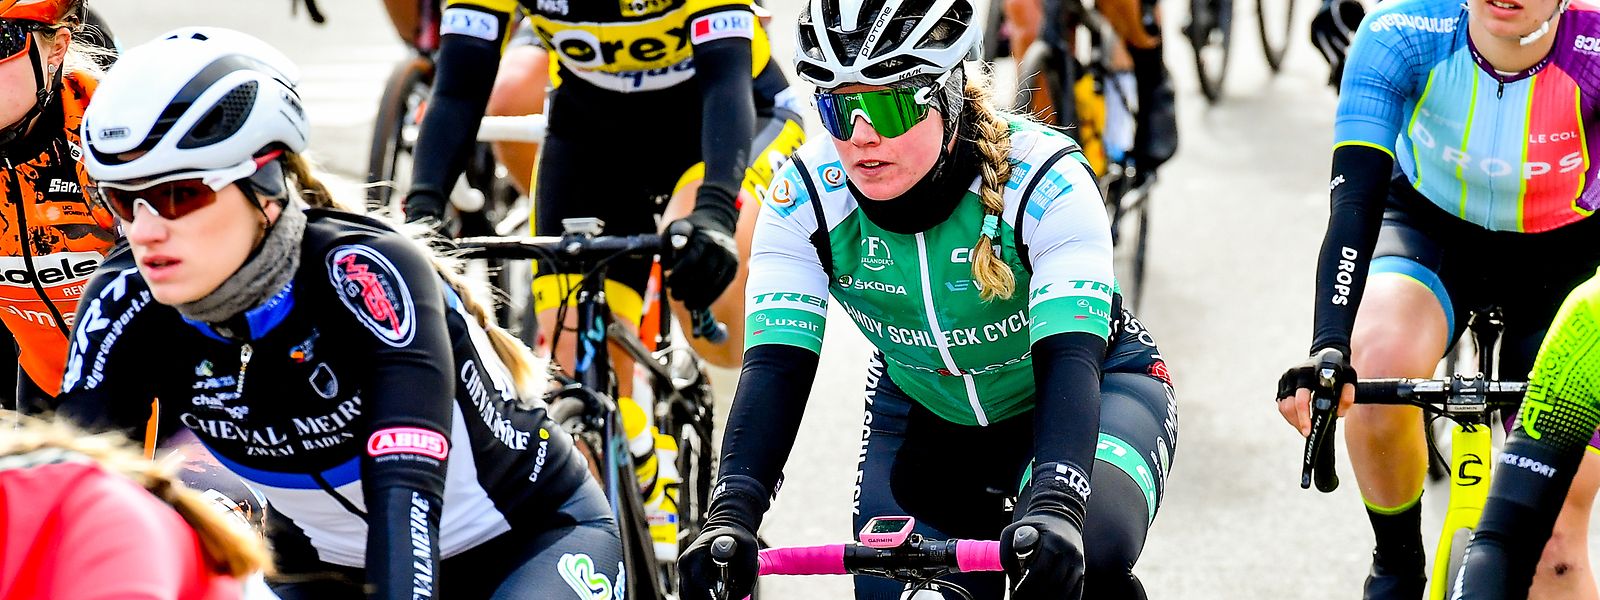 Mia Berg (grünes Trikot) gehört zur Mannschaft Andy Schleck Cycles-Immo Losch.